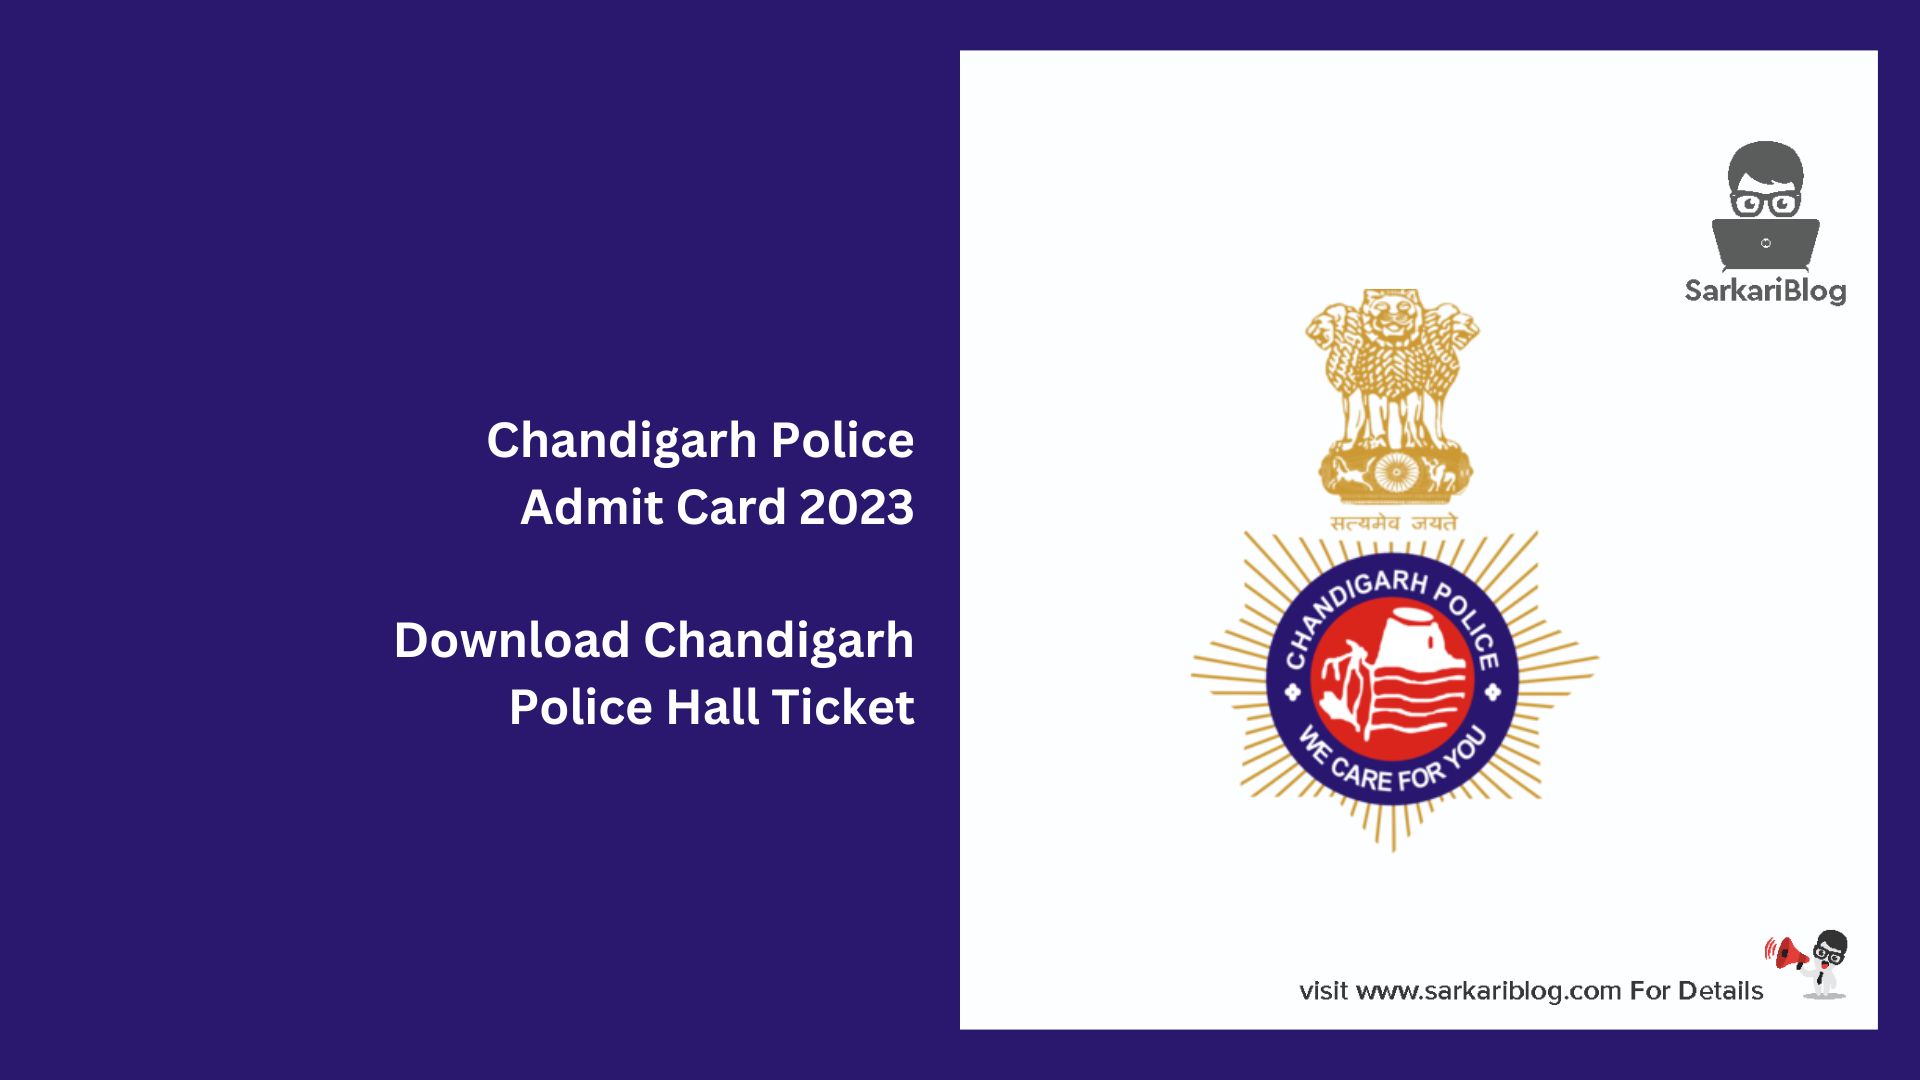 Chandigarh Police Admit Card 2023